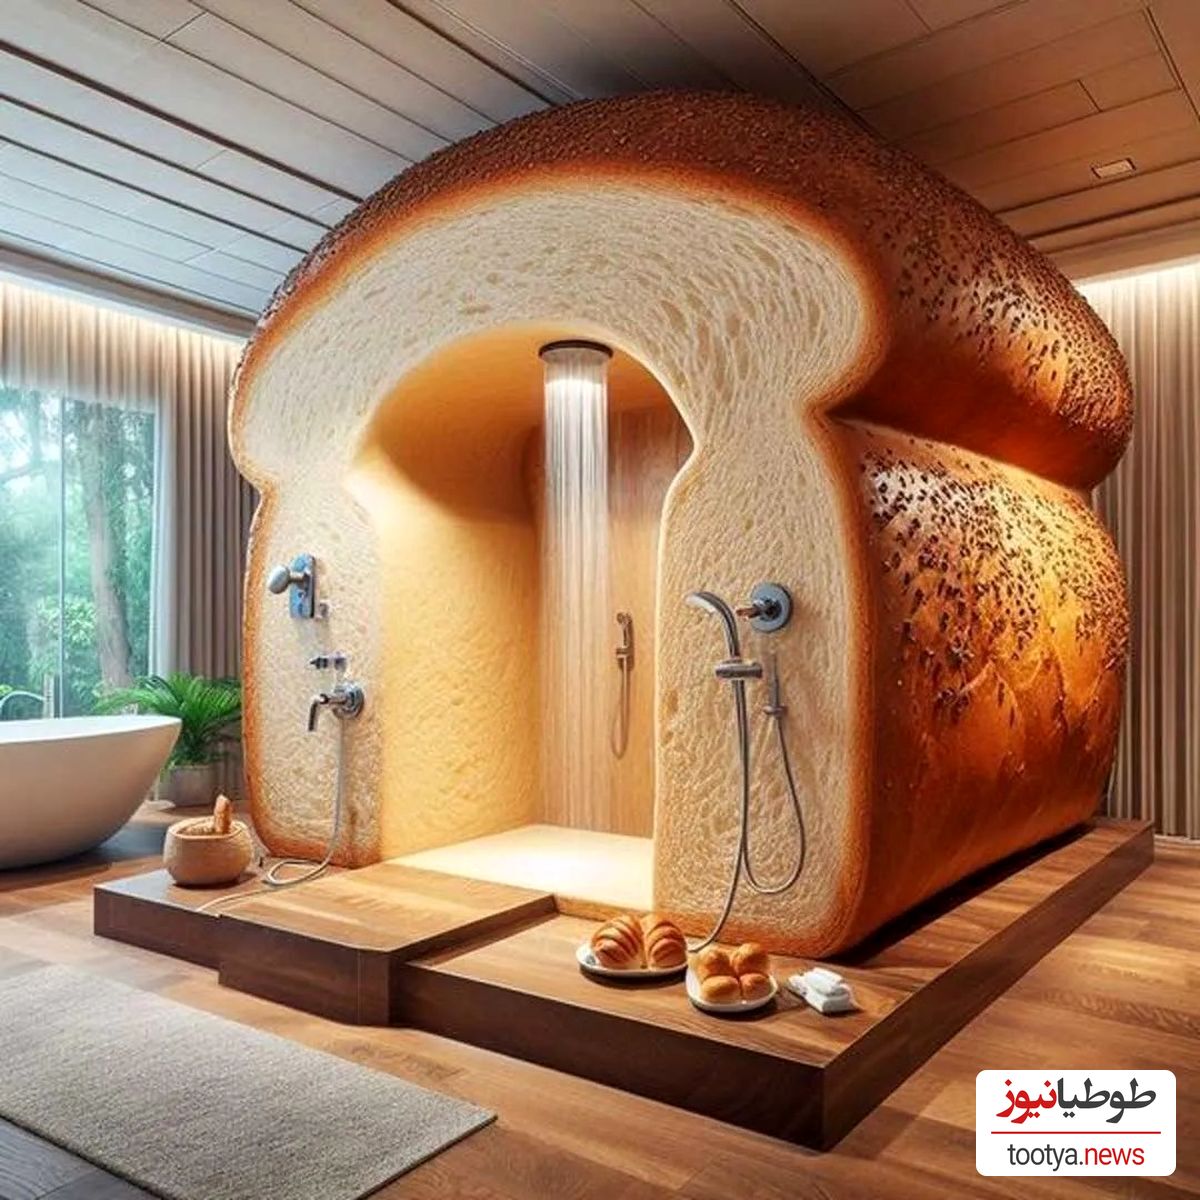 (عکس)  ایده های فانتزی پیشنهادی طراحان داخلی برای دیزاین حمام خانه / از حمام خود یک قصر جادویی بسازید